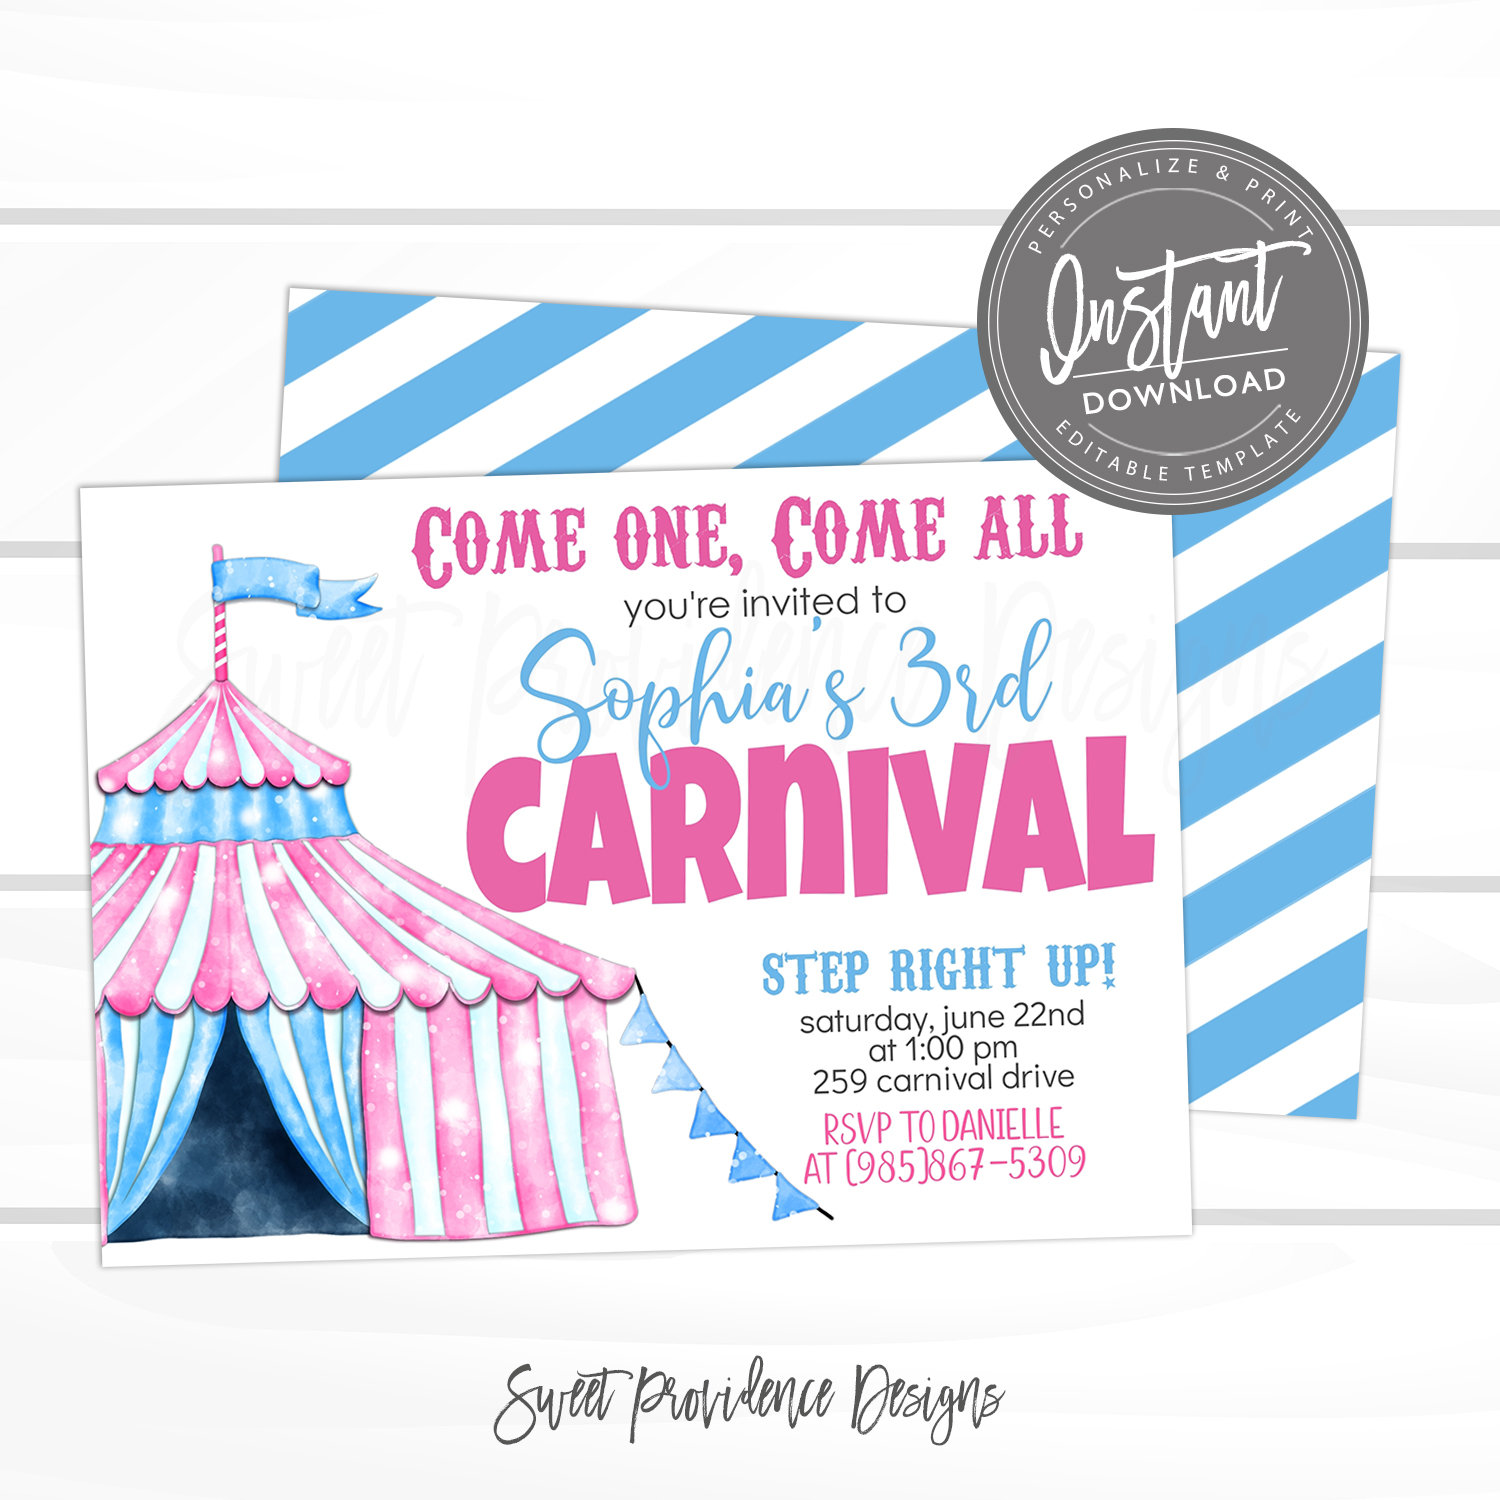 carnival ticket invitations